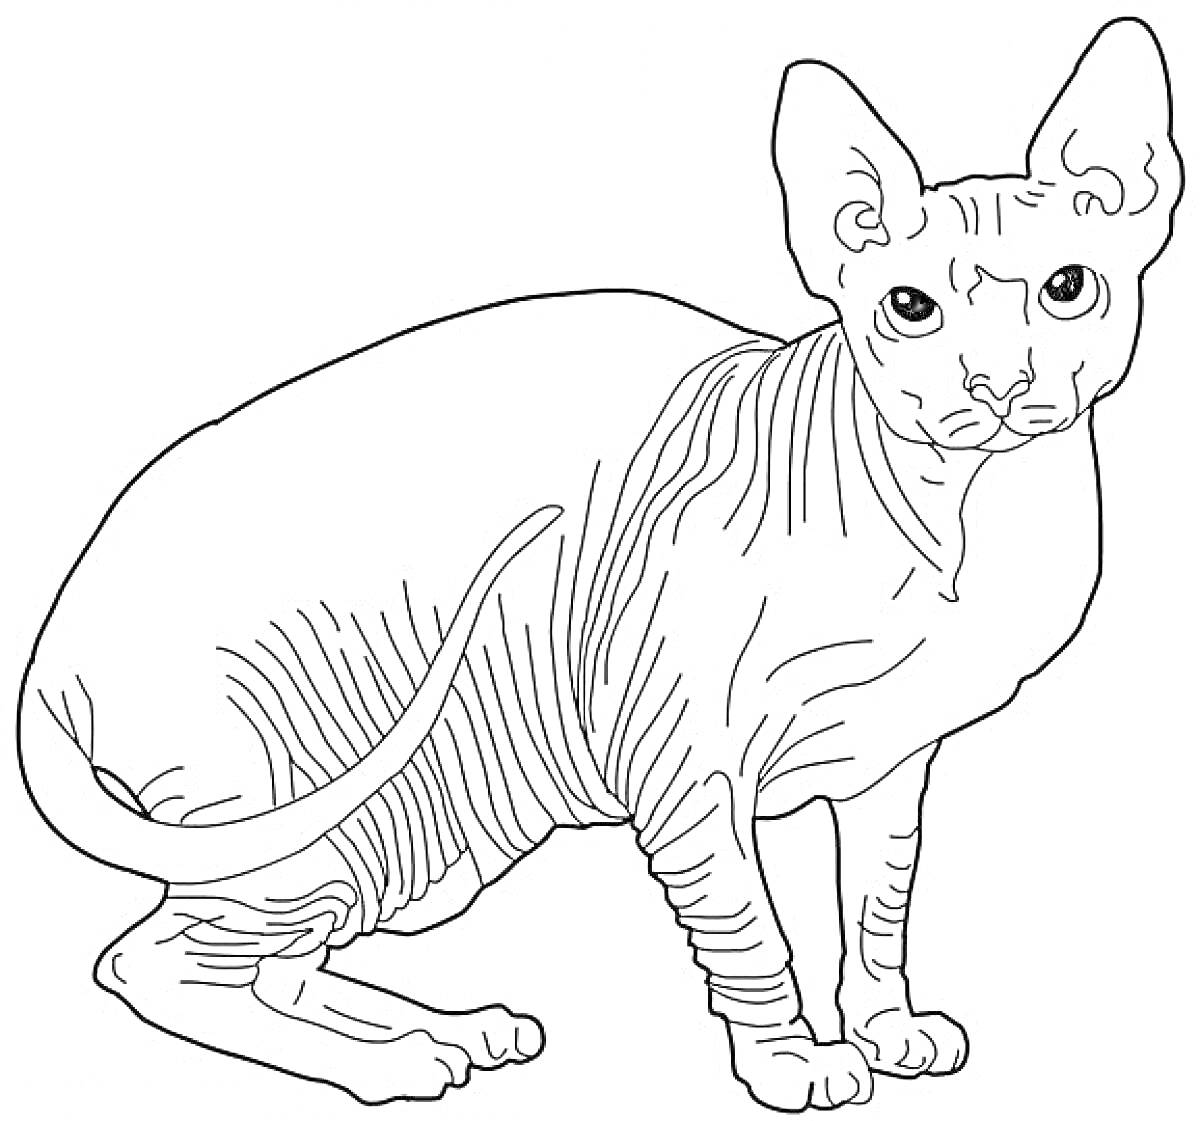 Раскраска Лысая кошка Сфинкс сидит с наклоненной головой